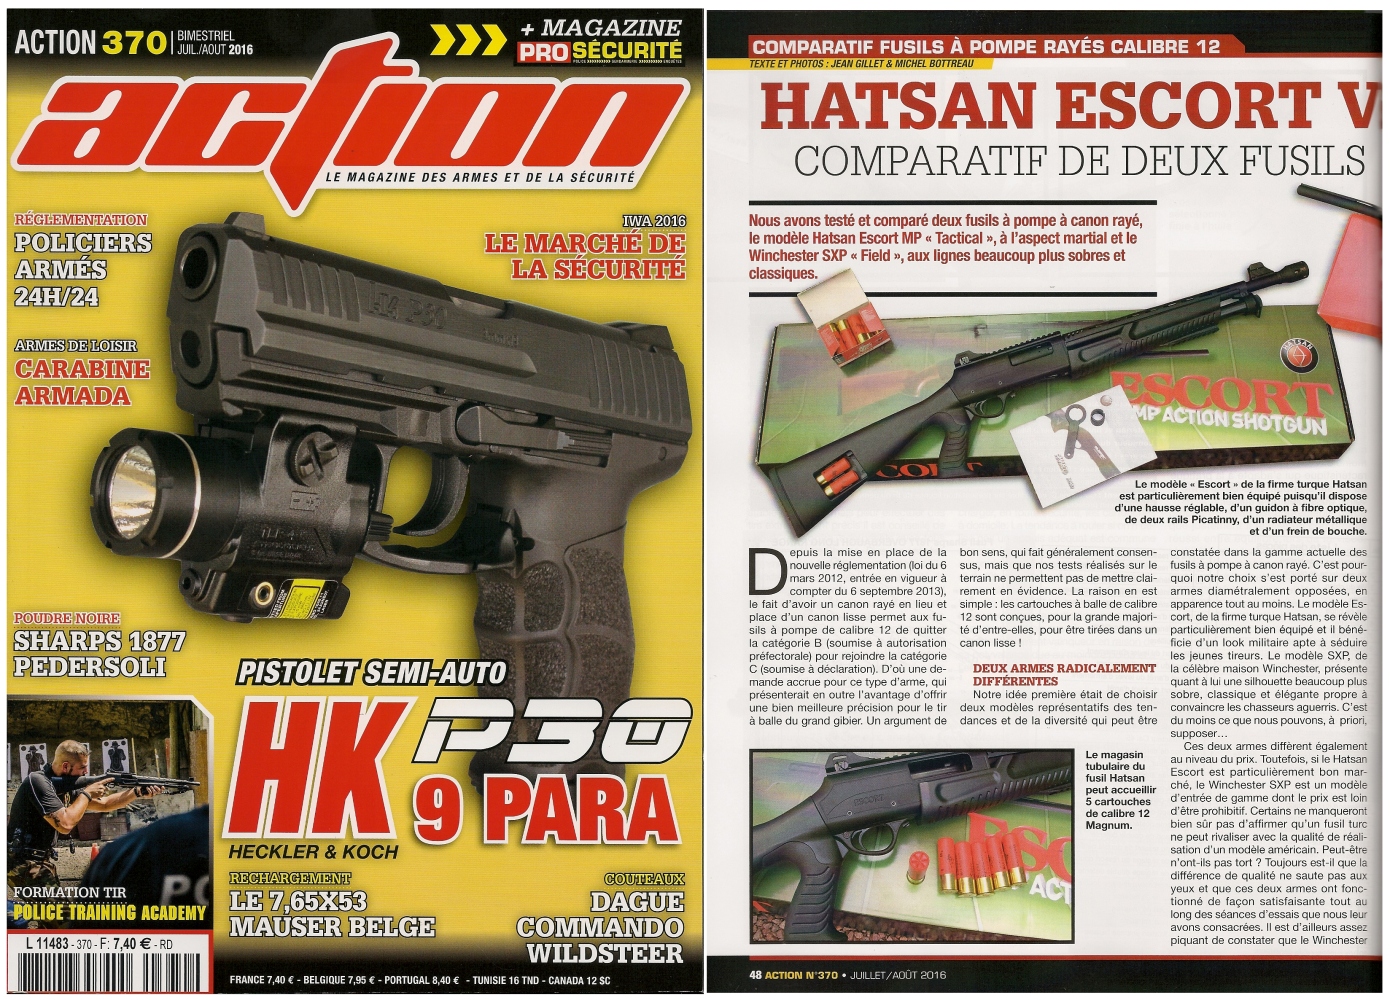 Le banc d’essai comparatif des fusils Hatsan Escort et le Winchester SXP a été publié sur 6 pages dans le magazine Action n°370 (juillet/août 2016). 